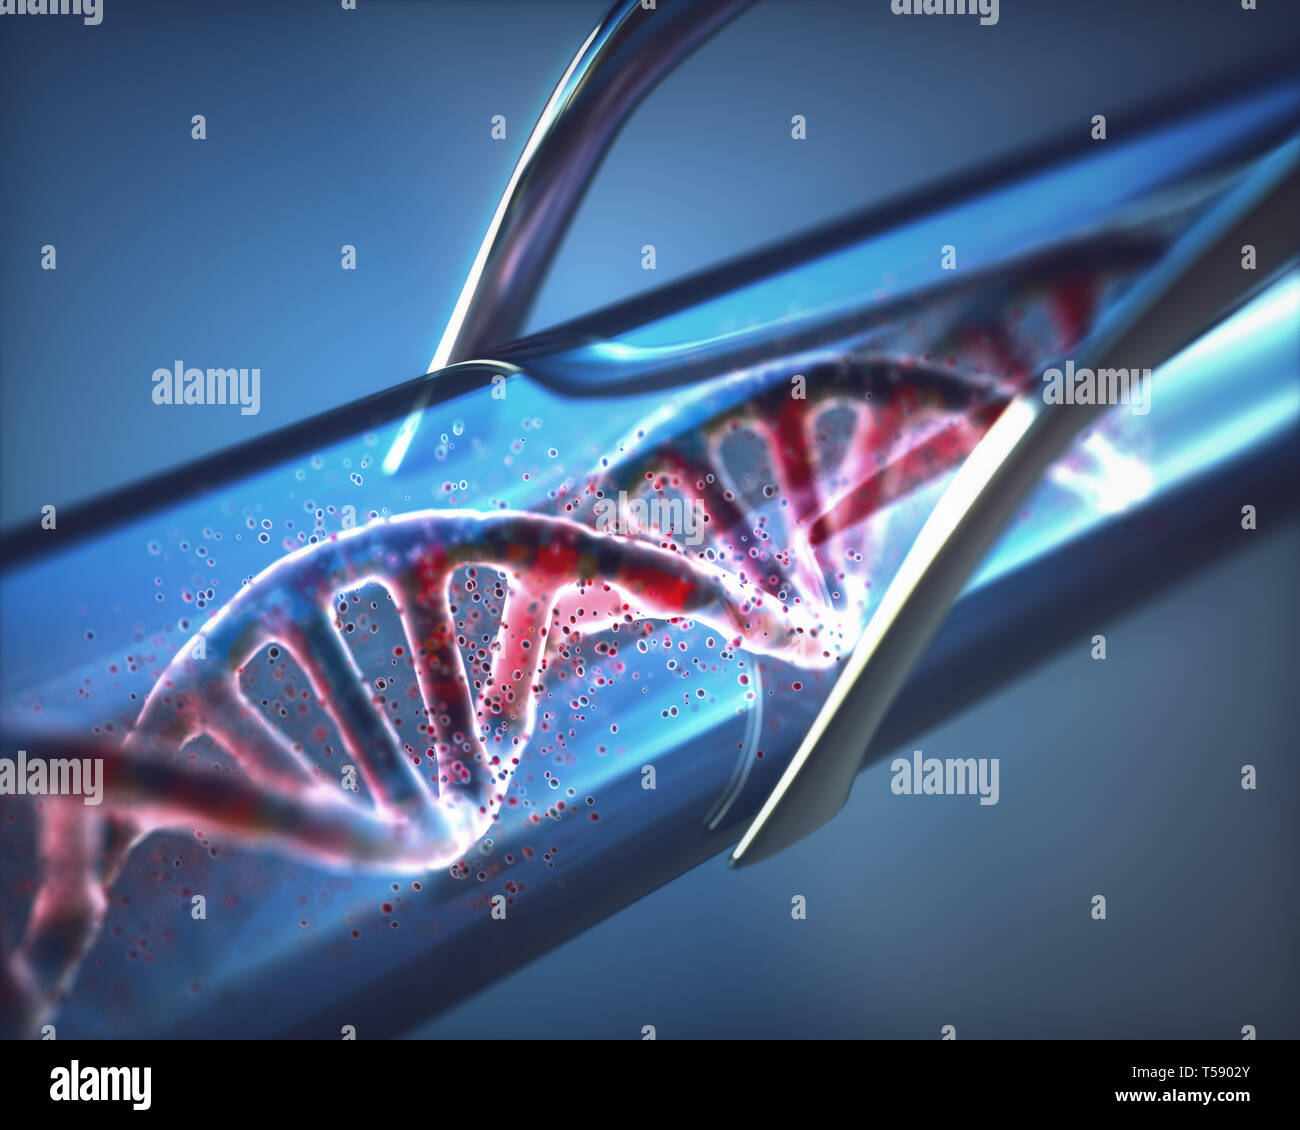 Ilustración 3D. Creación de ADN artificial dentro de un tubo de ensayo. Foto de stock